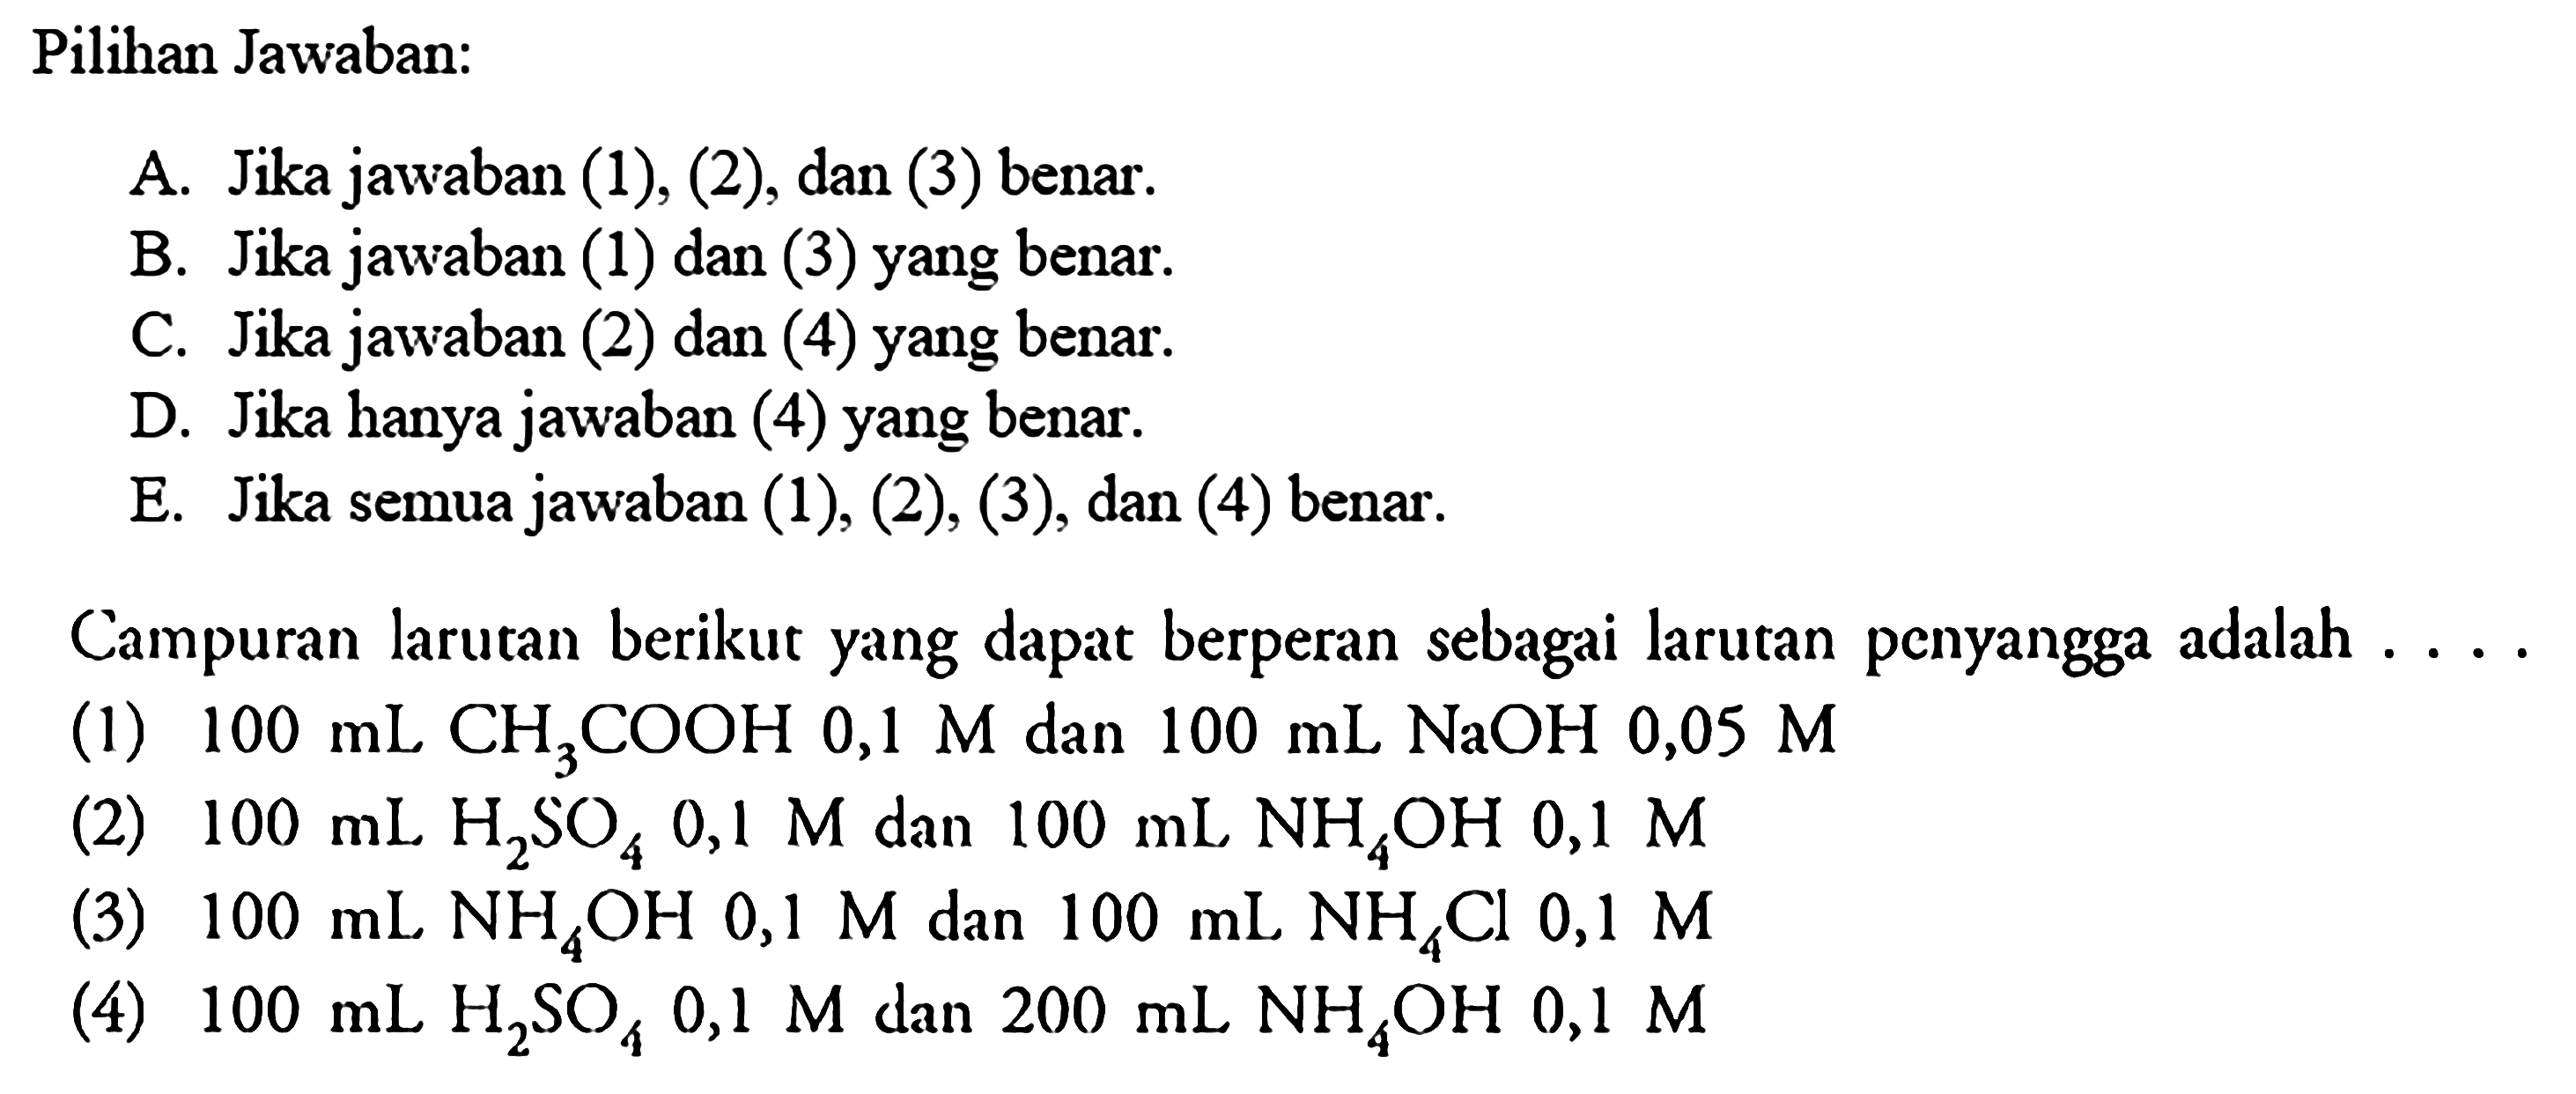 Pilihan Jawaban: Campuran larutan berikut yang dapat berperan sebagai larutan penyangga adalah ... (1) 100 mL CH3COOH 0,1 M dan 100 mL NaOH 0,05 M (2) 100 mL H2SO4 0,1 M dan 100 mL NH4OH 0,1 M (3) 100 mL NH4OH 0,1 M dan 100 mL NH4Cl 0,1 M (4) 100 mL H2SO4 0,1 M dan 200 mL NH4OH 0,1 M